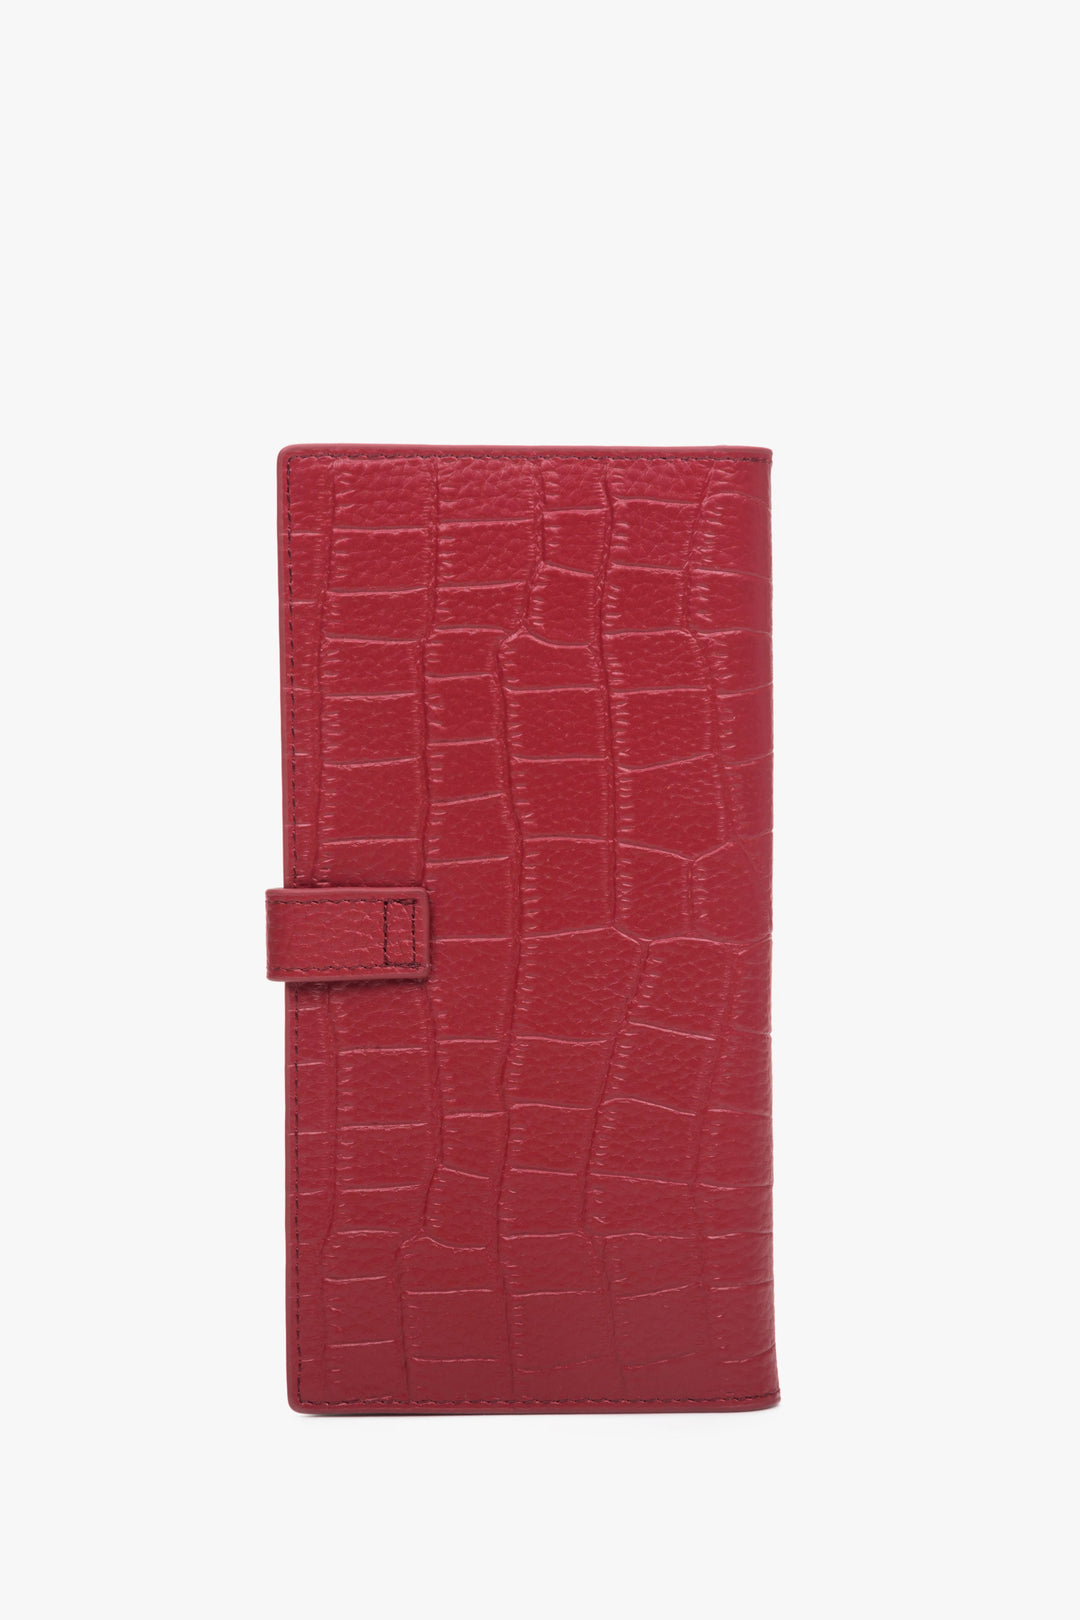 Duży czerwony portfel damski z tłoczonej skóry naturalnej ze srebrnymi detalami Estro - tył.